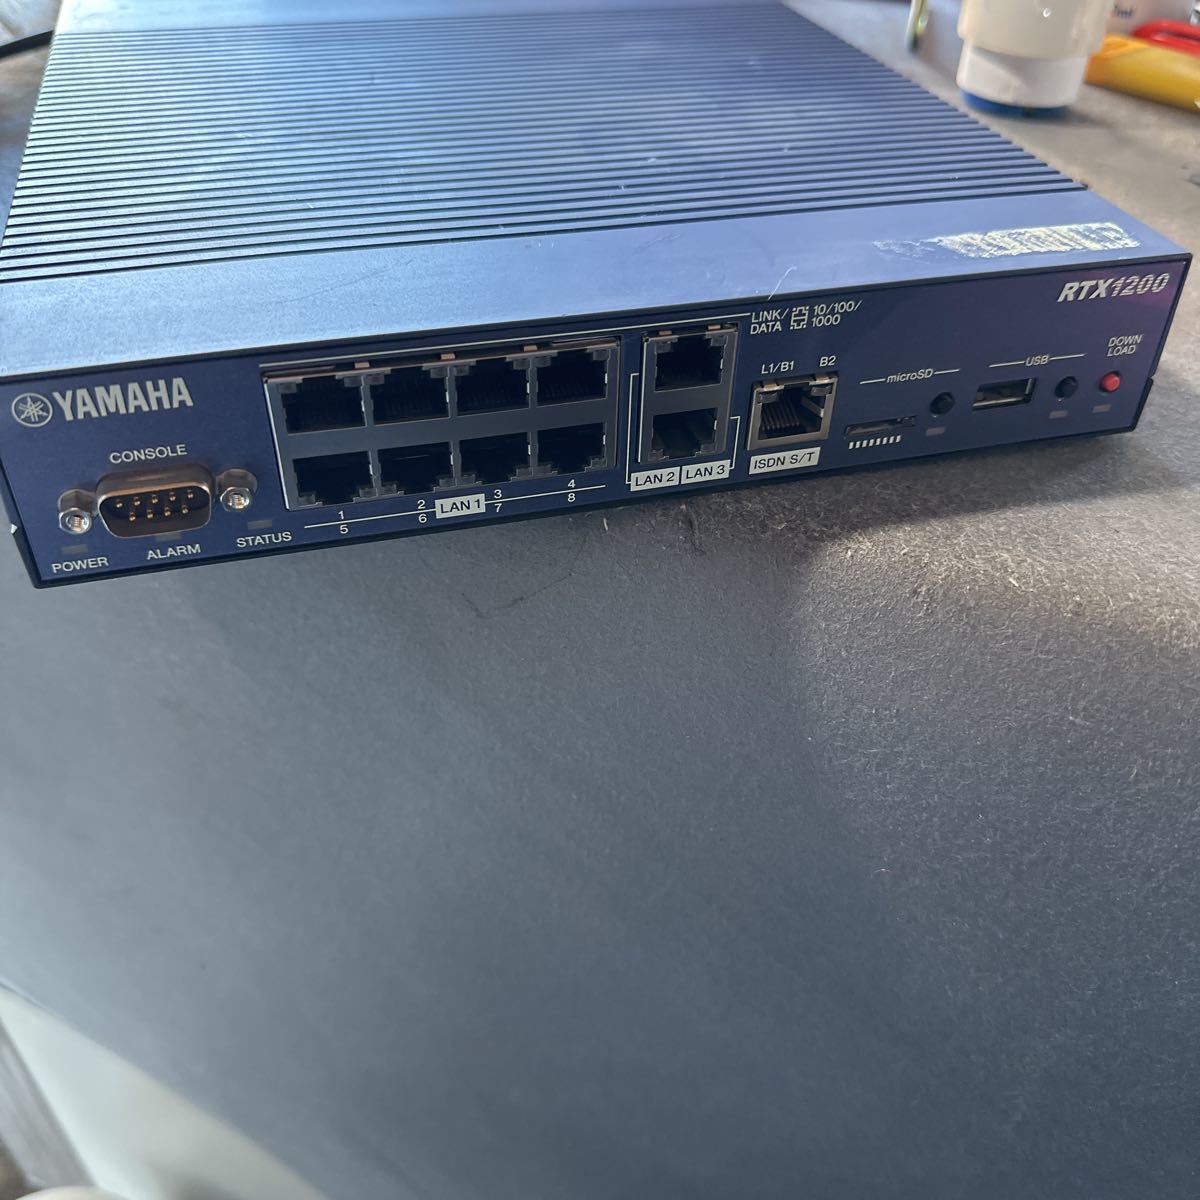 D431」YAMAHA ギガアクセス VPNルーター RTX1200 | JChereヤフオク代理購入